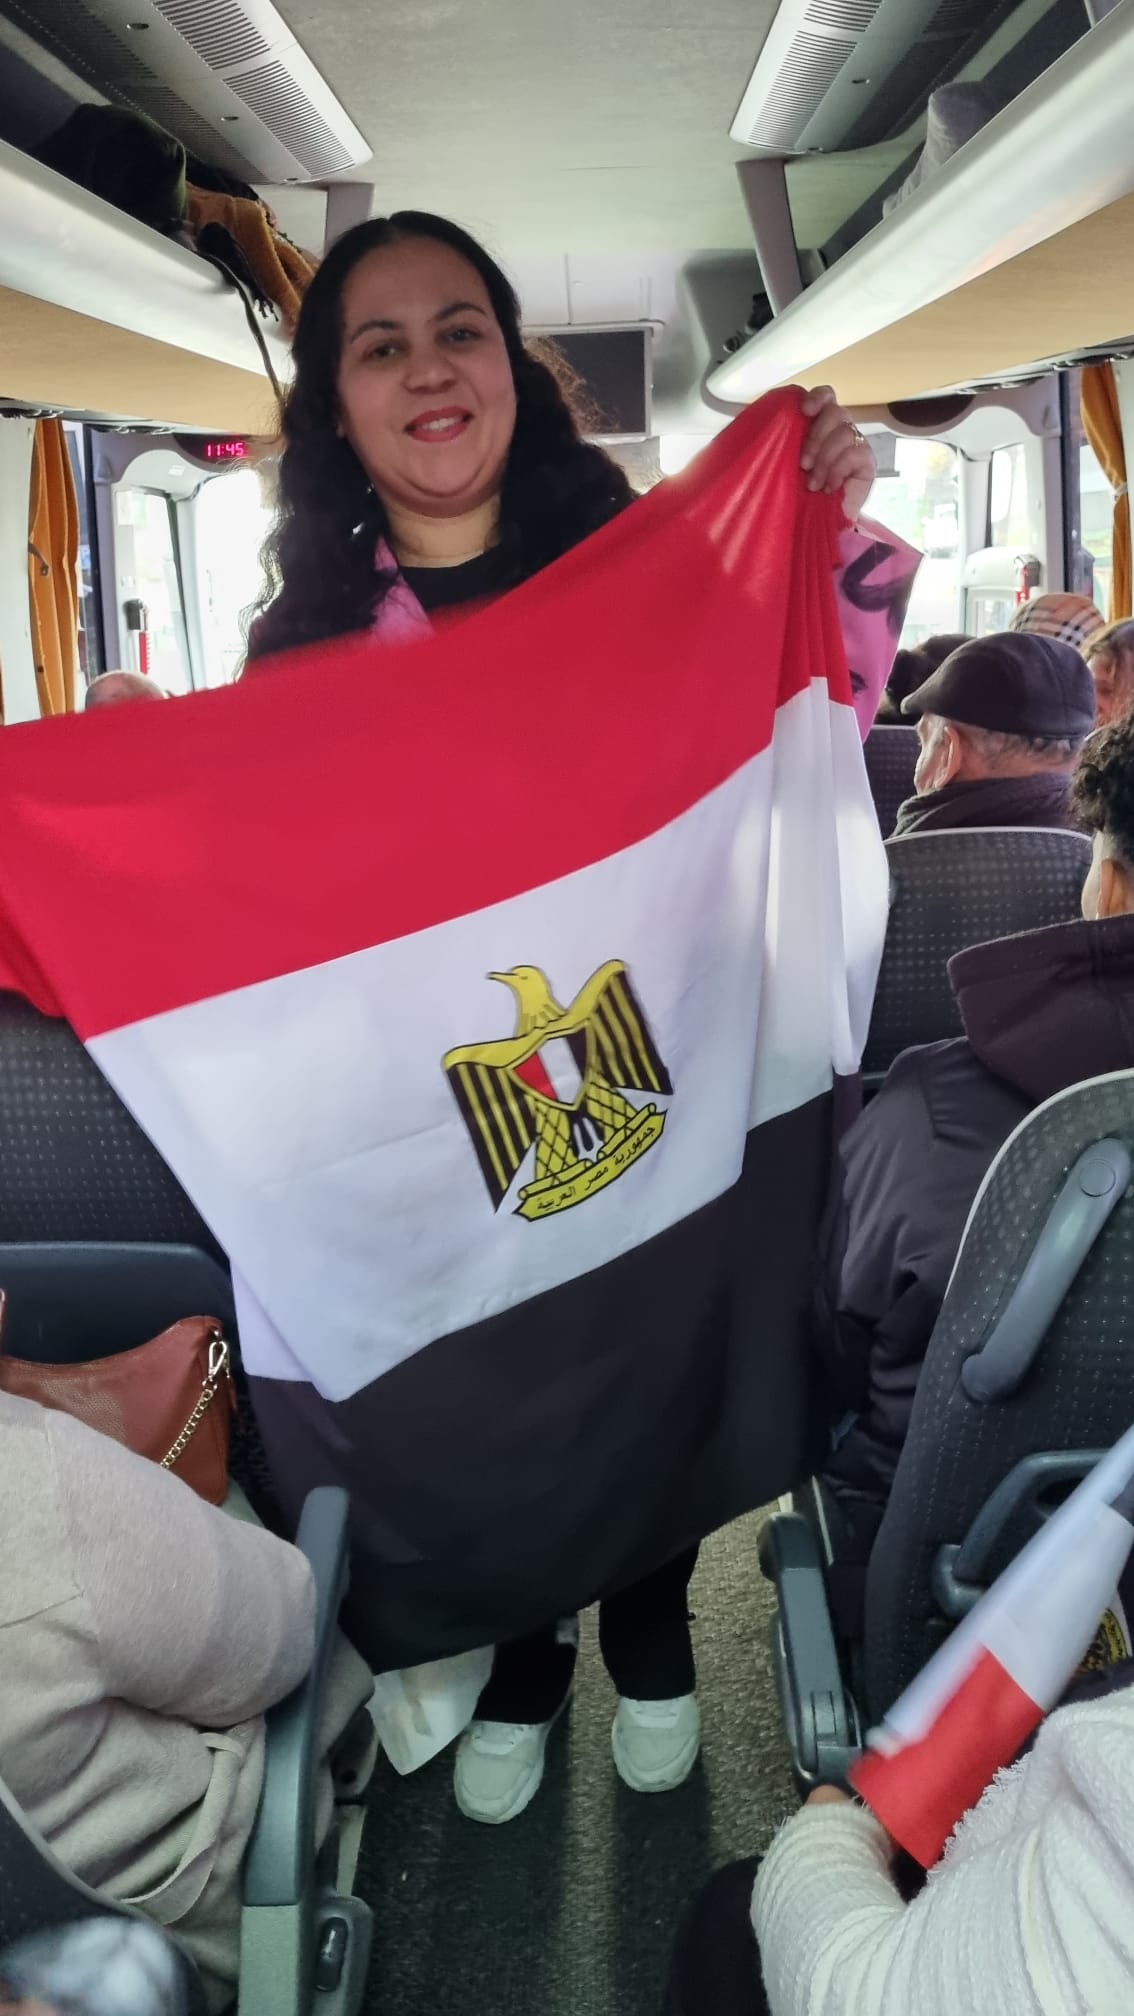 حرص أبناء الجالية المصرية بهولندا على التقاط الصور التذكارية بأعلام مصر